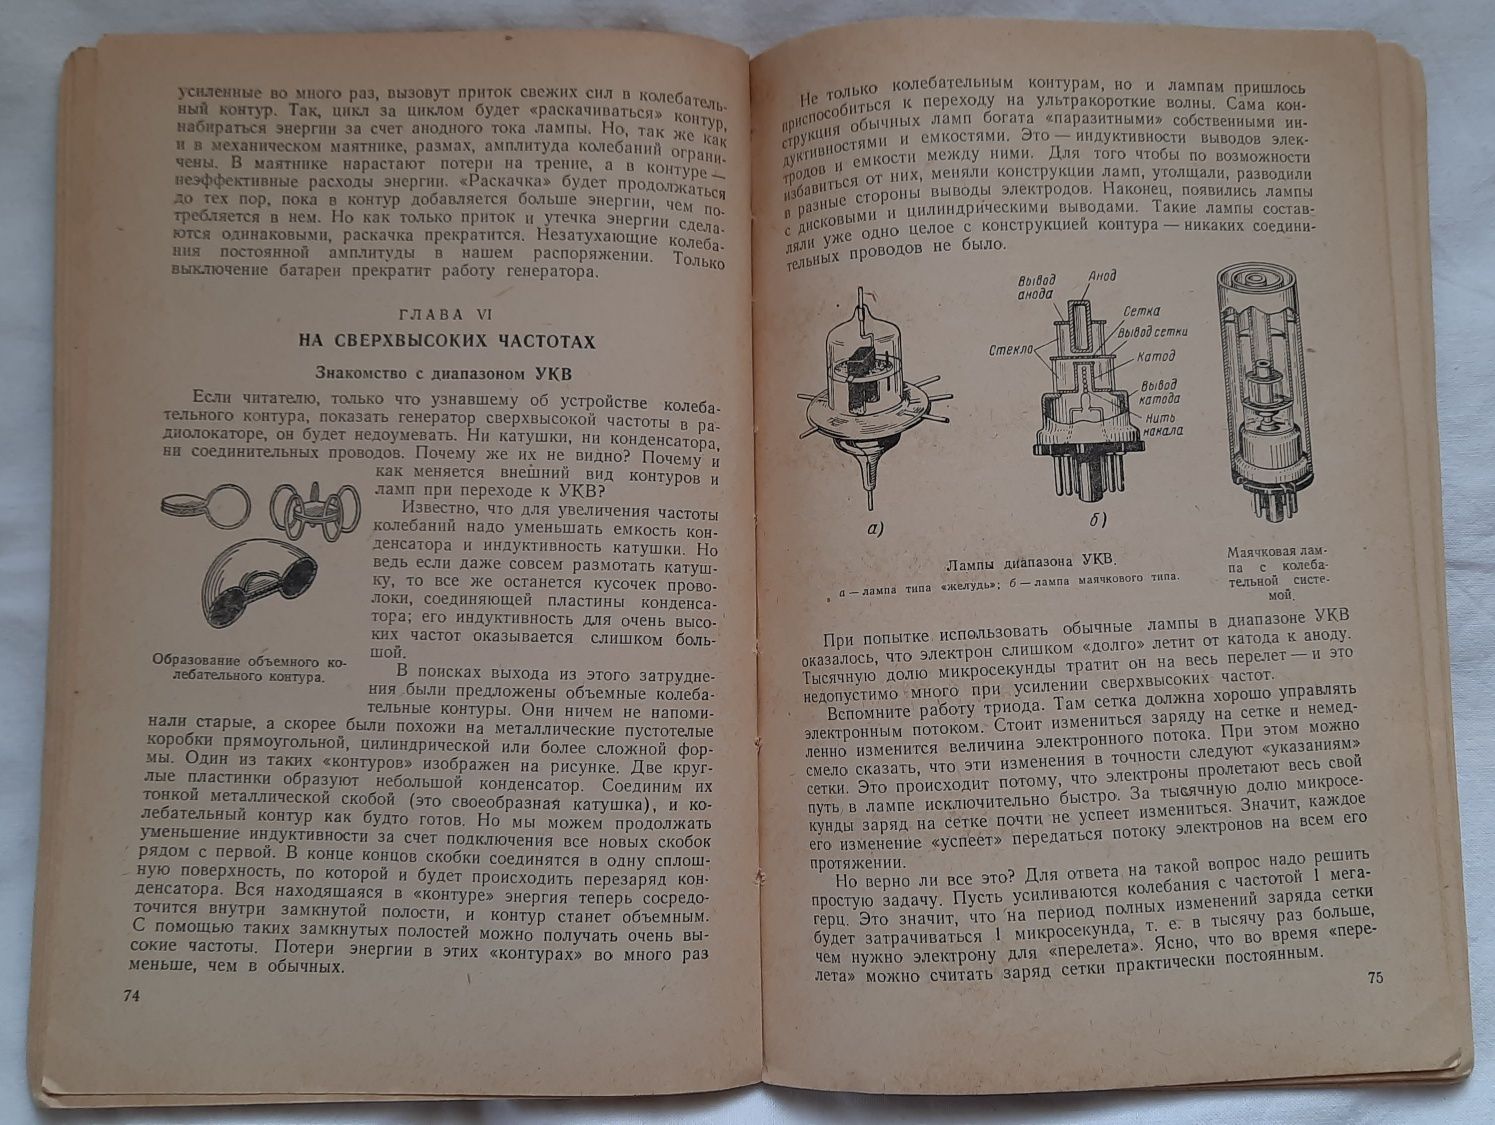 Книга Как работает радиолокатор, 1955 год